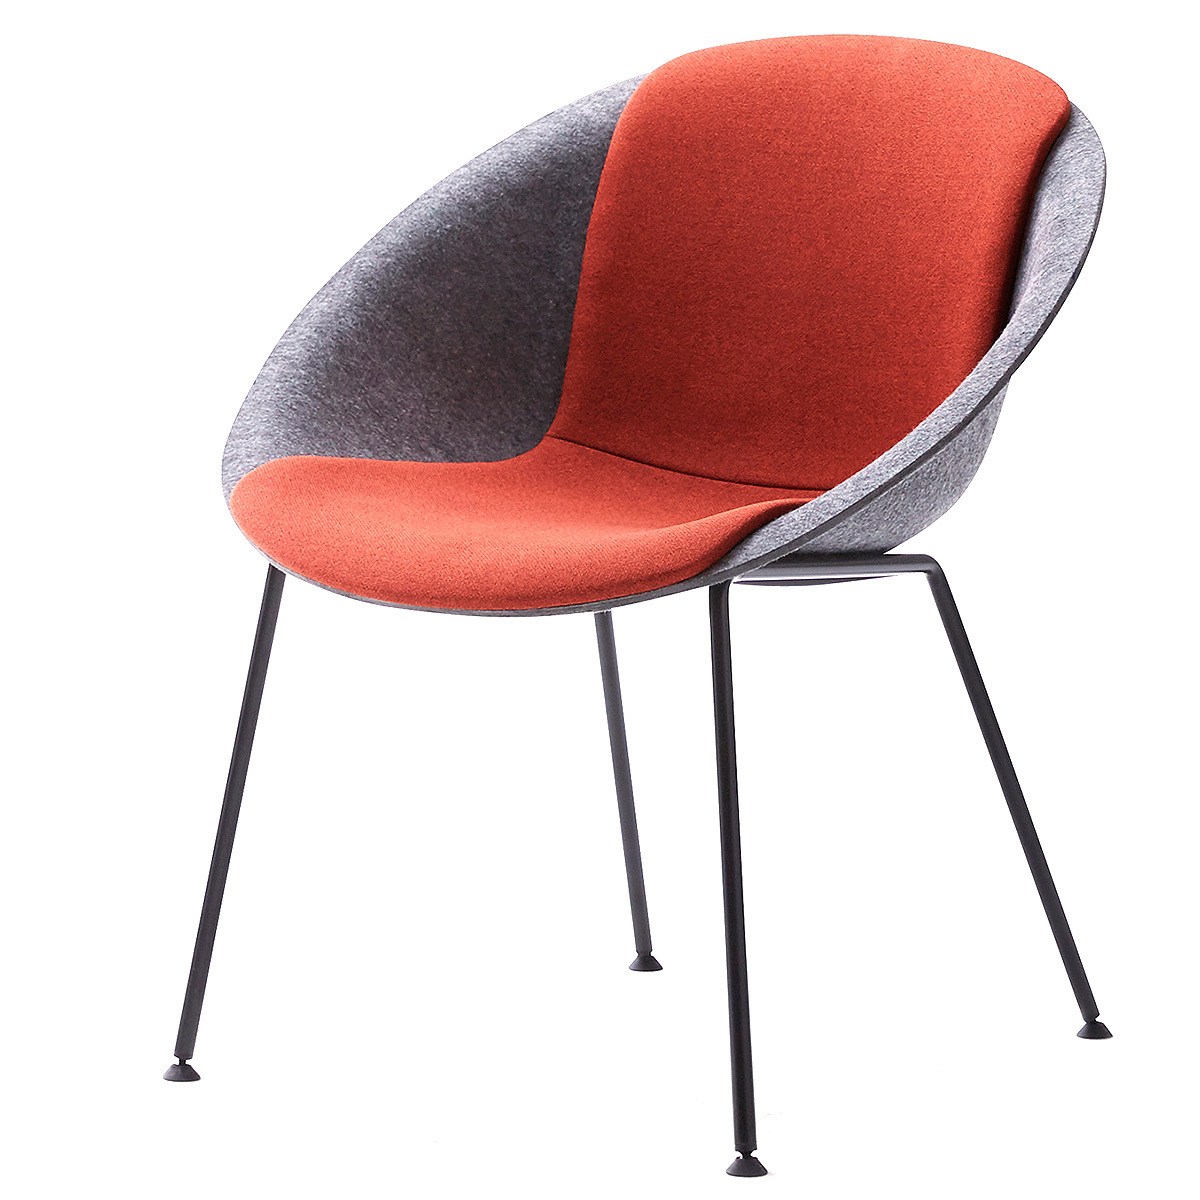 시디즈 플랑 패브릭 인테리어 의자 M631E Sidiz Planc Fabric Interior Chair, 단일색상 